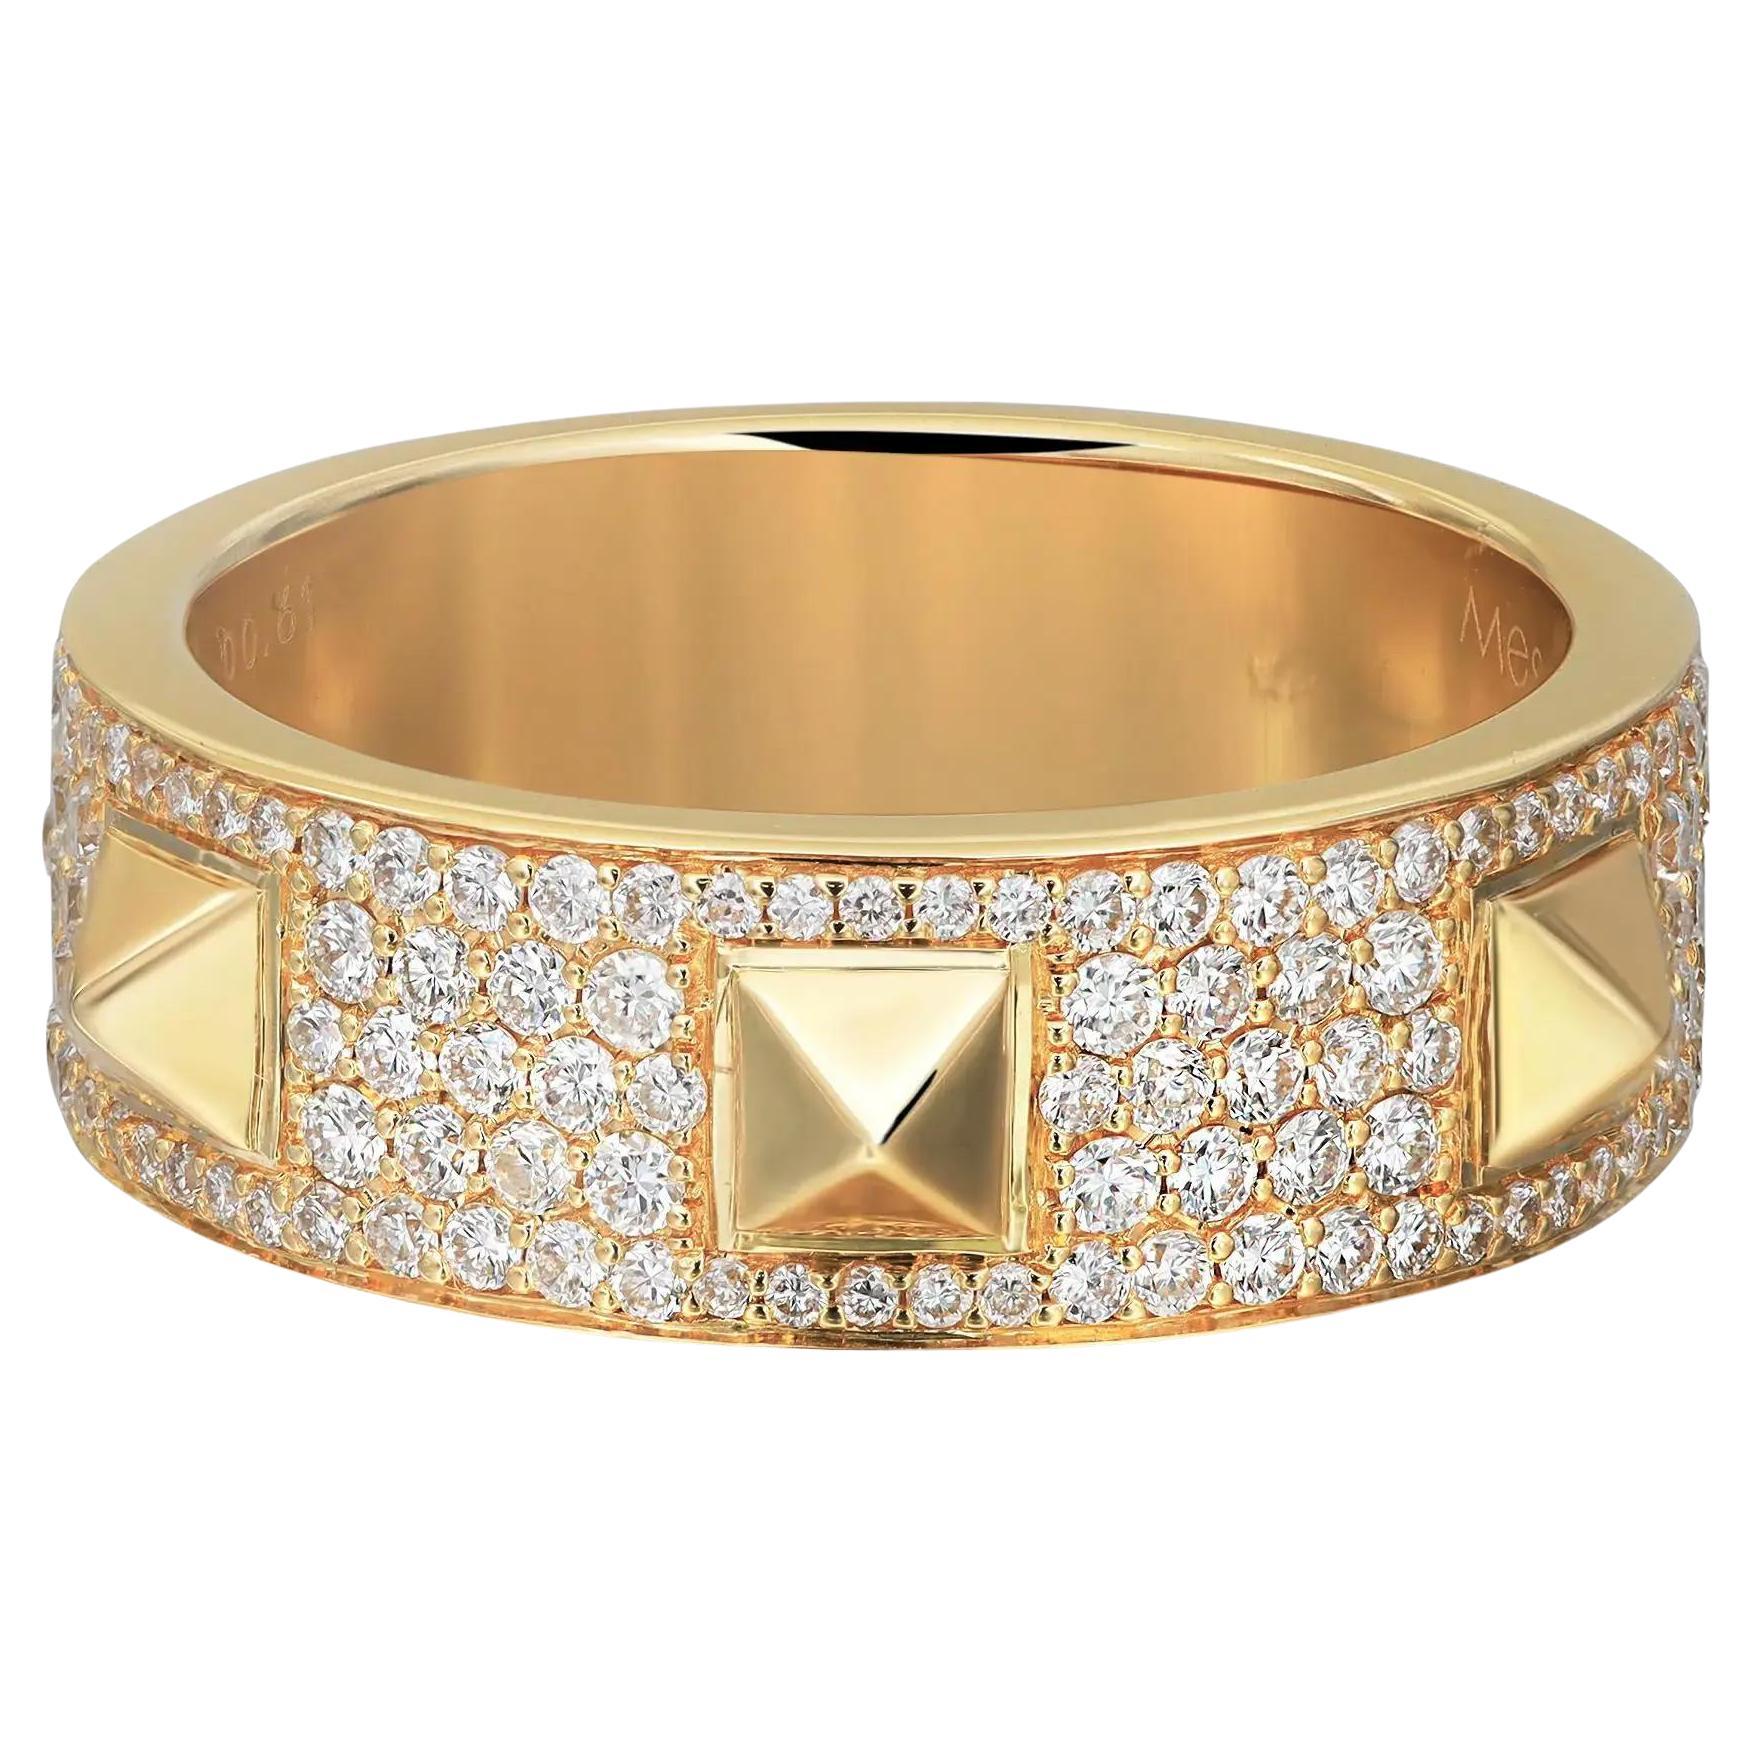 Messika Bague à anneau en or jaune 18 carats avec diamants 0,61 carat au total, taille 53 US 6,5